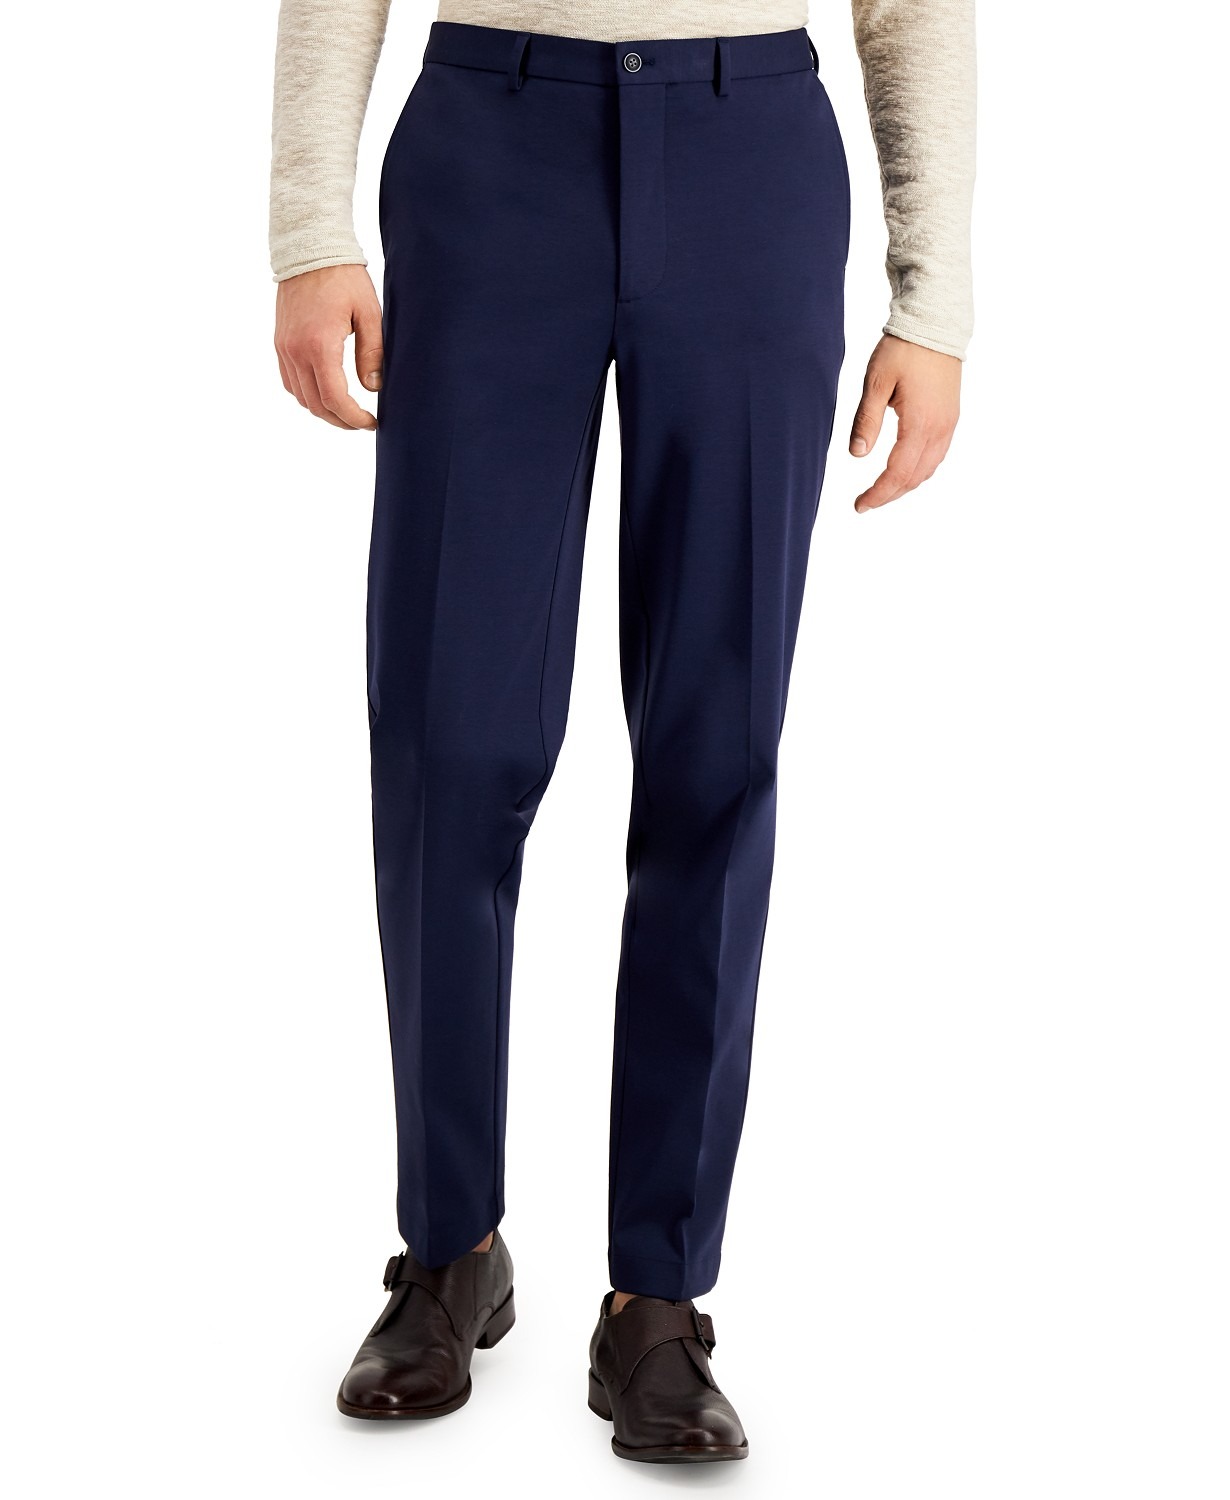 Sale on Calvin Klein Men's Slim-Fit Stretch Navy Blue Suit Pants